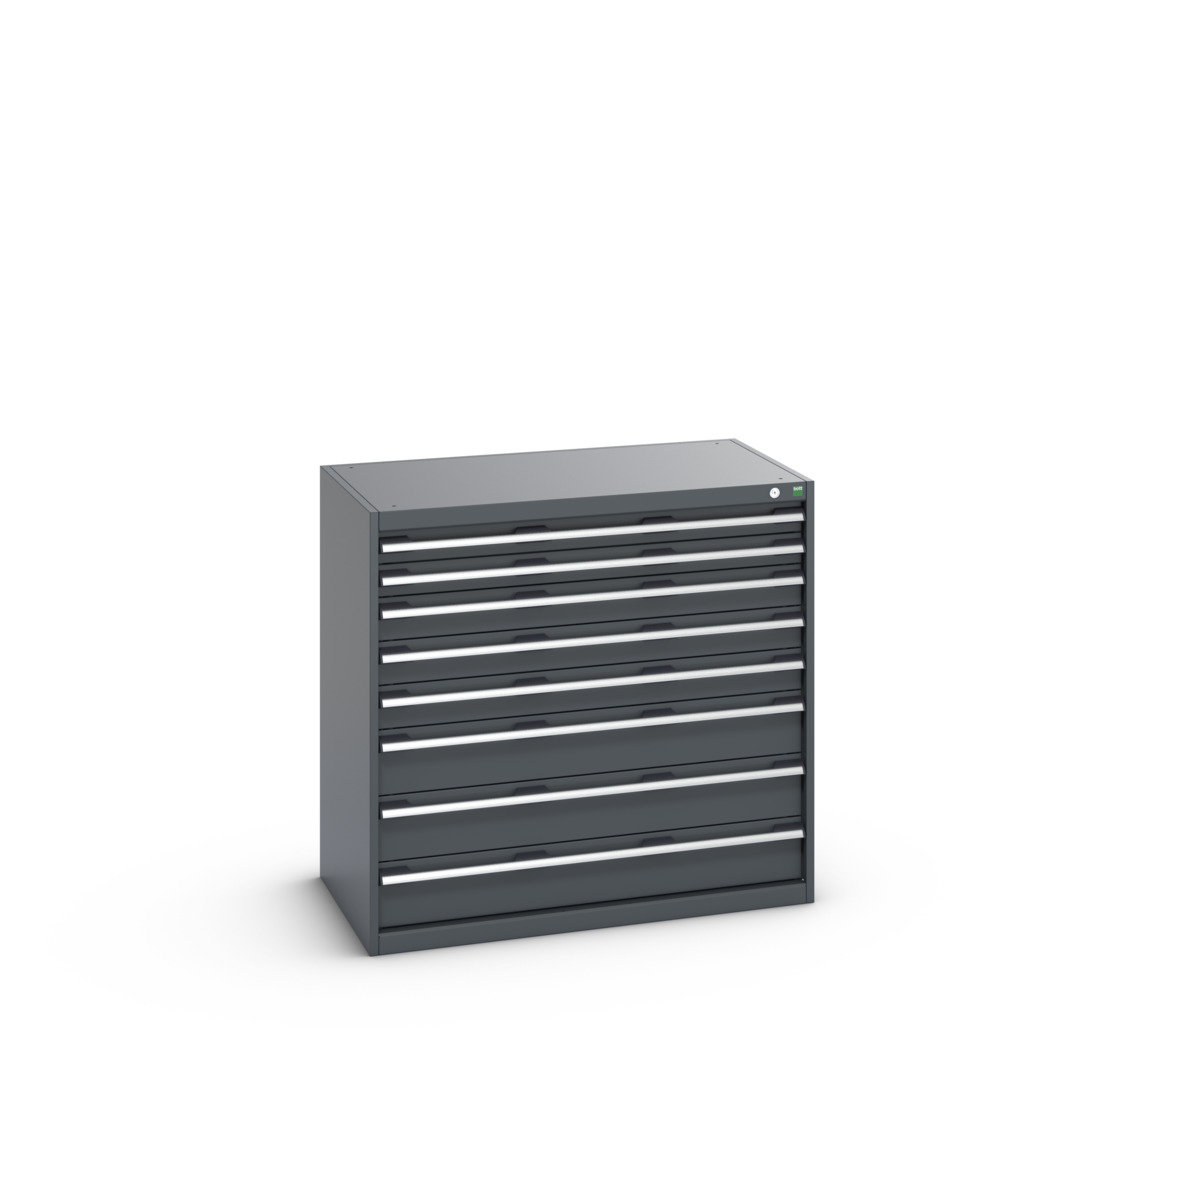 40021033.77V - cubio drawer cabinet